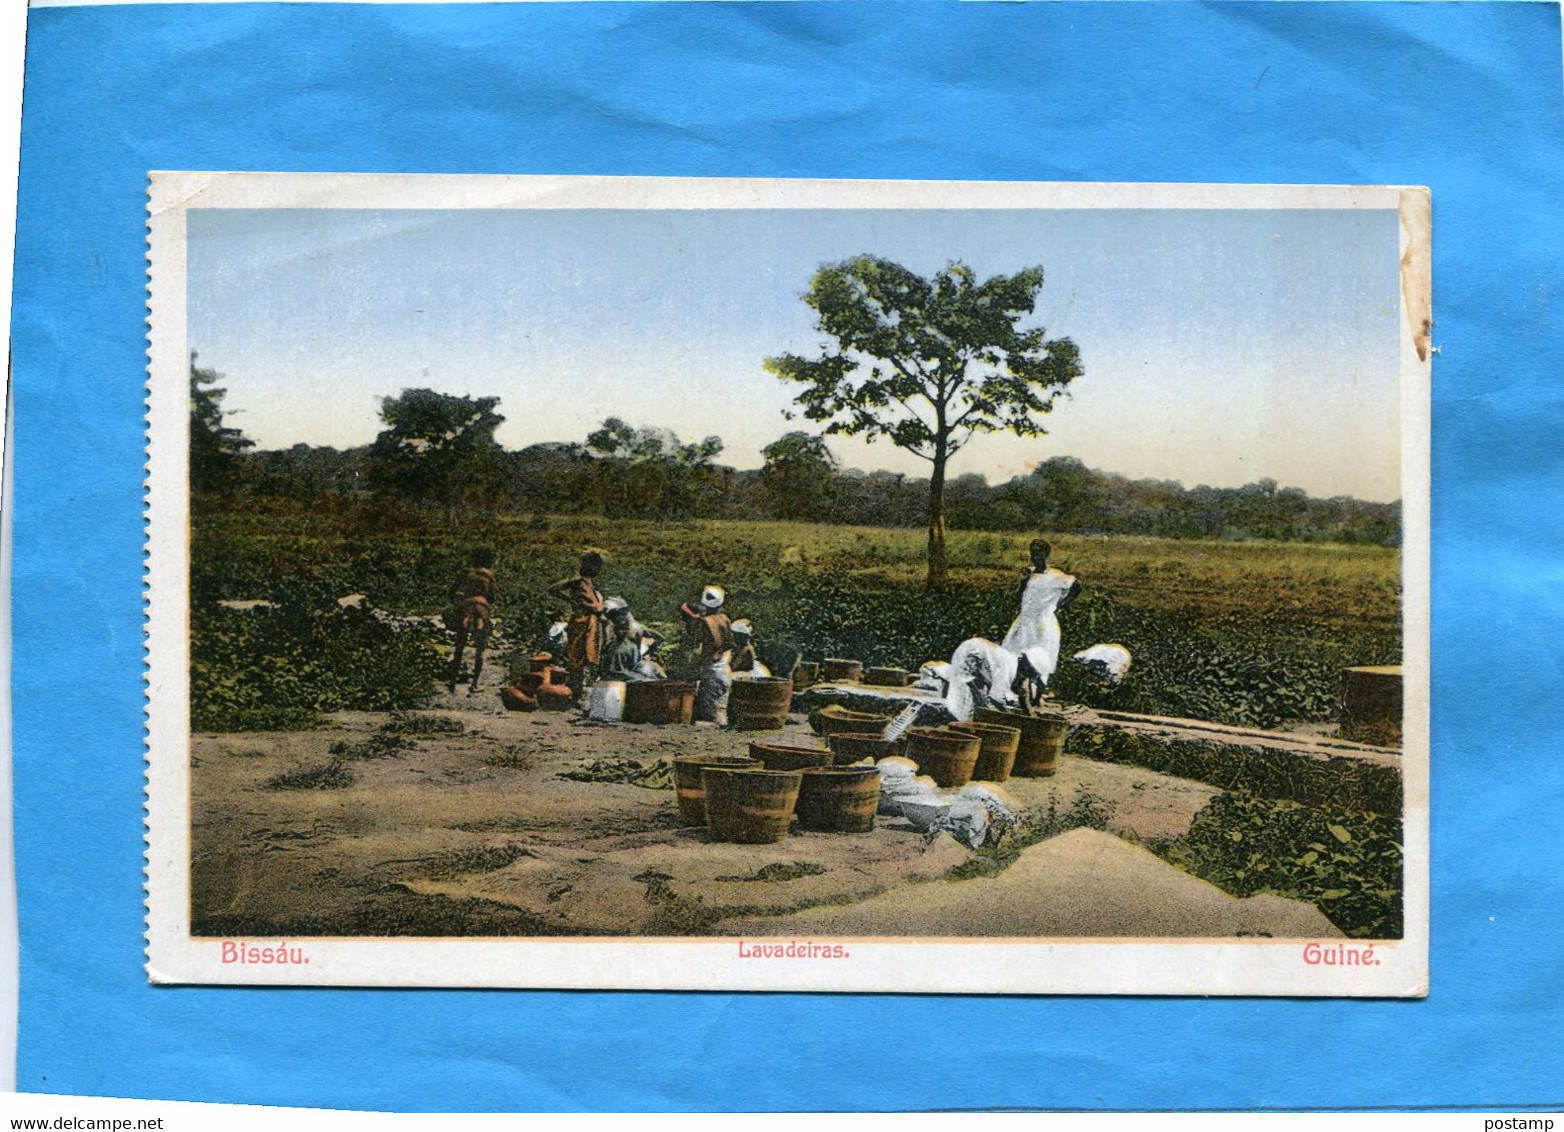 GUINEE-BISSAU-Lavandeiras-les Lavandières -plan Animé-années 1910-20 édition - Guinea-Bissau